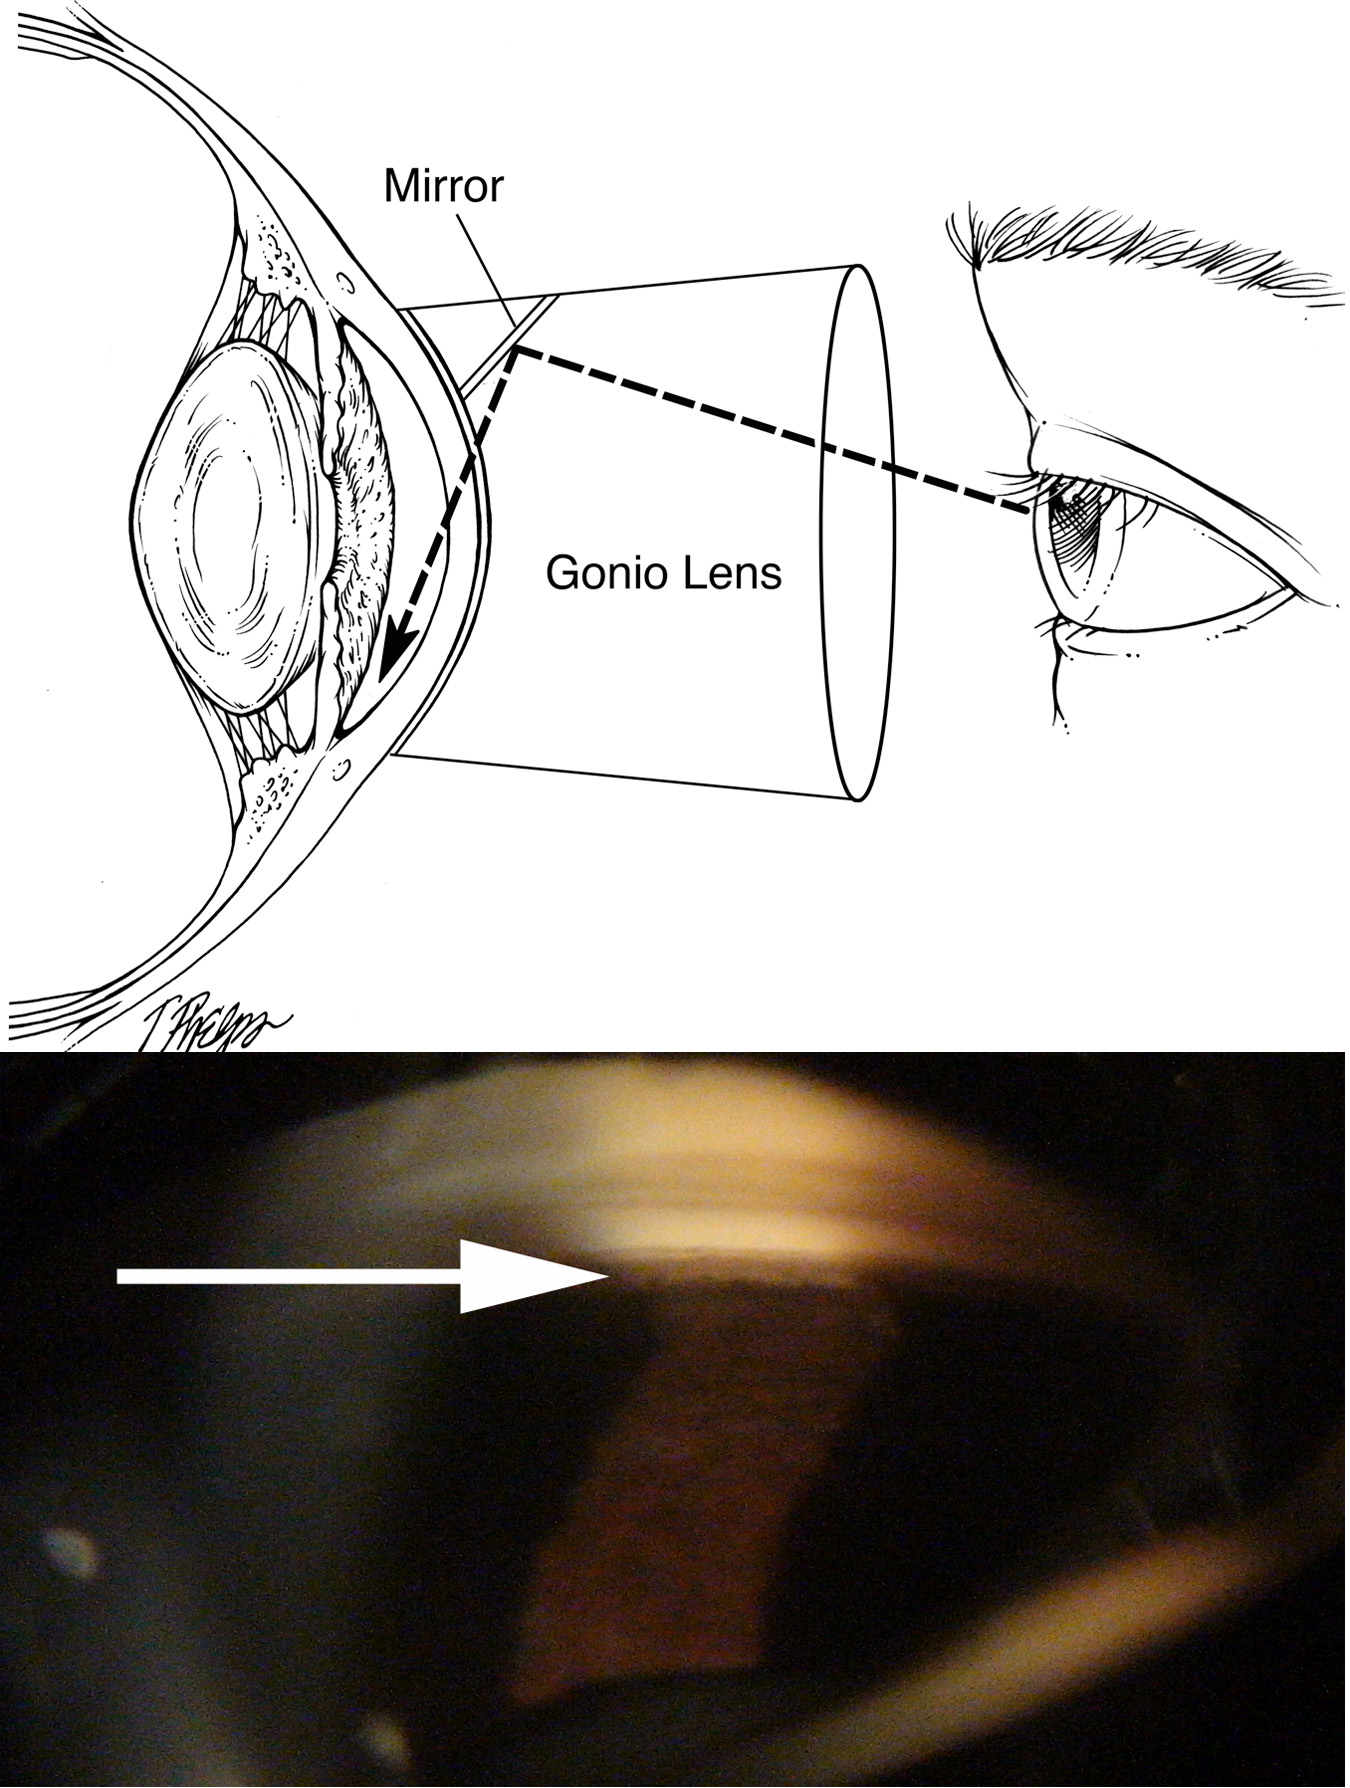 Angle Closure Glaucoma or Acute Glaucoma